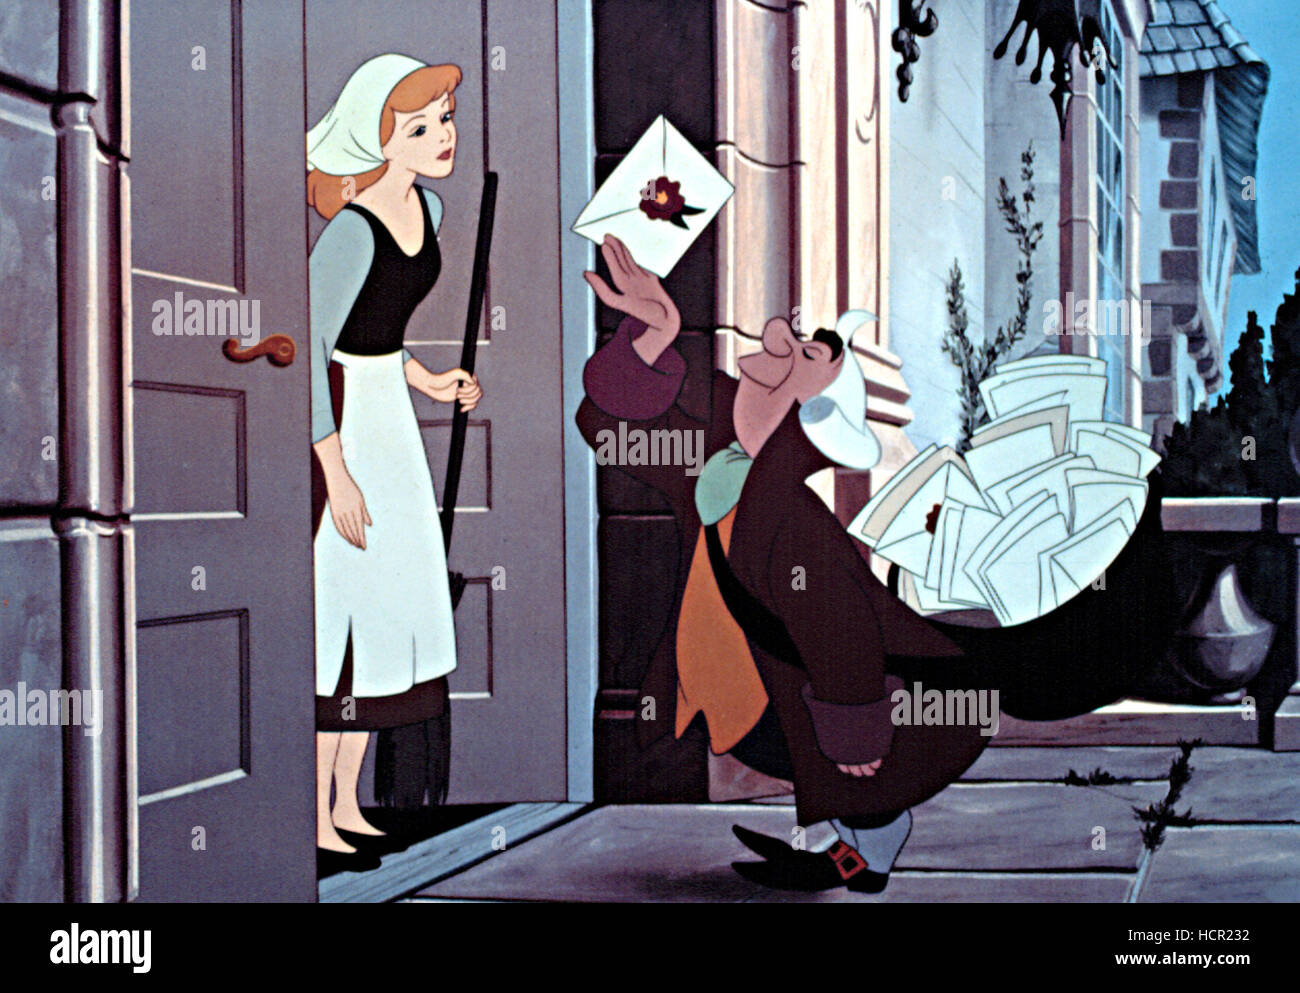 Cendrillon, Cendrillon, tenant un balai, arrête son ménage pour recevoir  une lettre, 1950 Photo Stock - Alamy